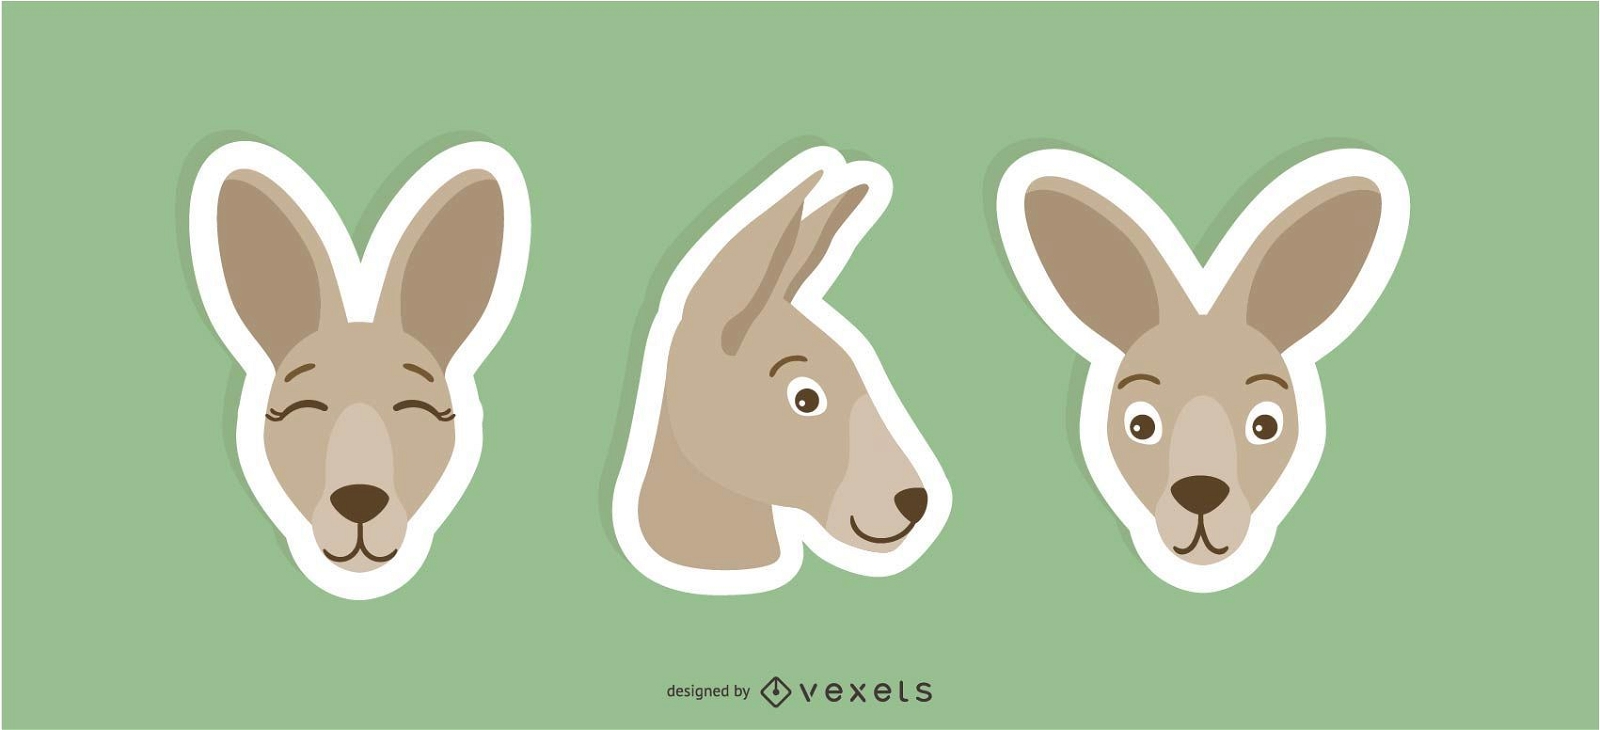 kangaroo sticker set